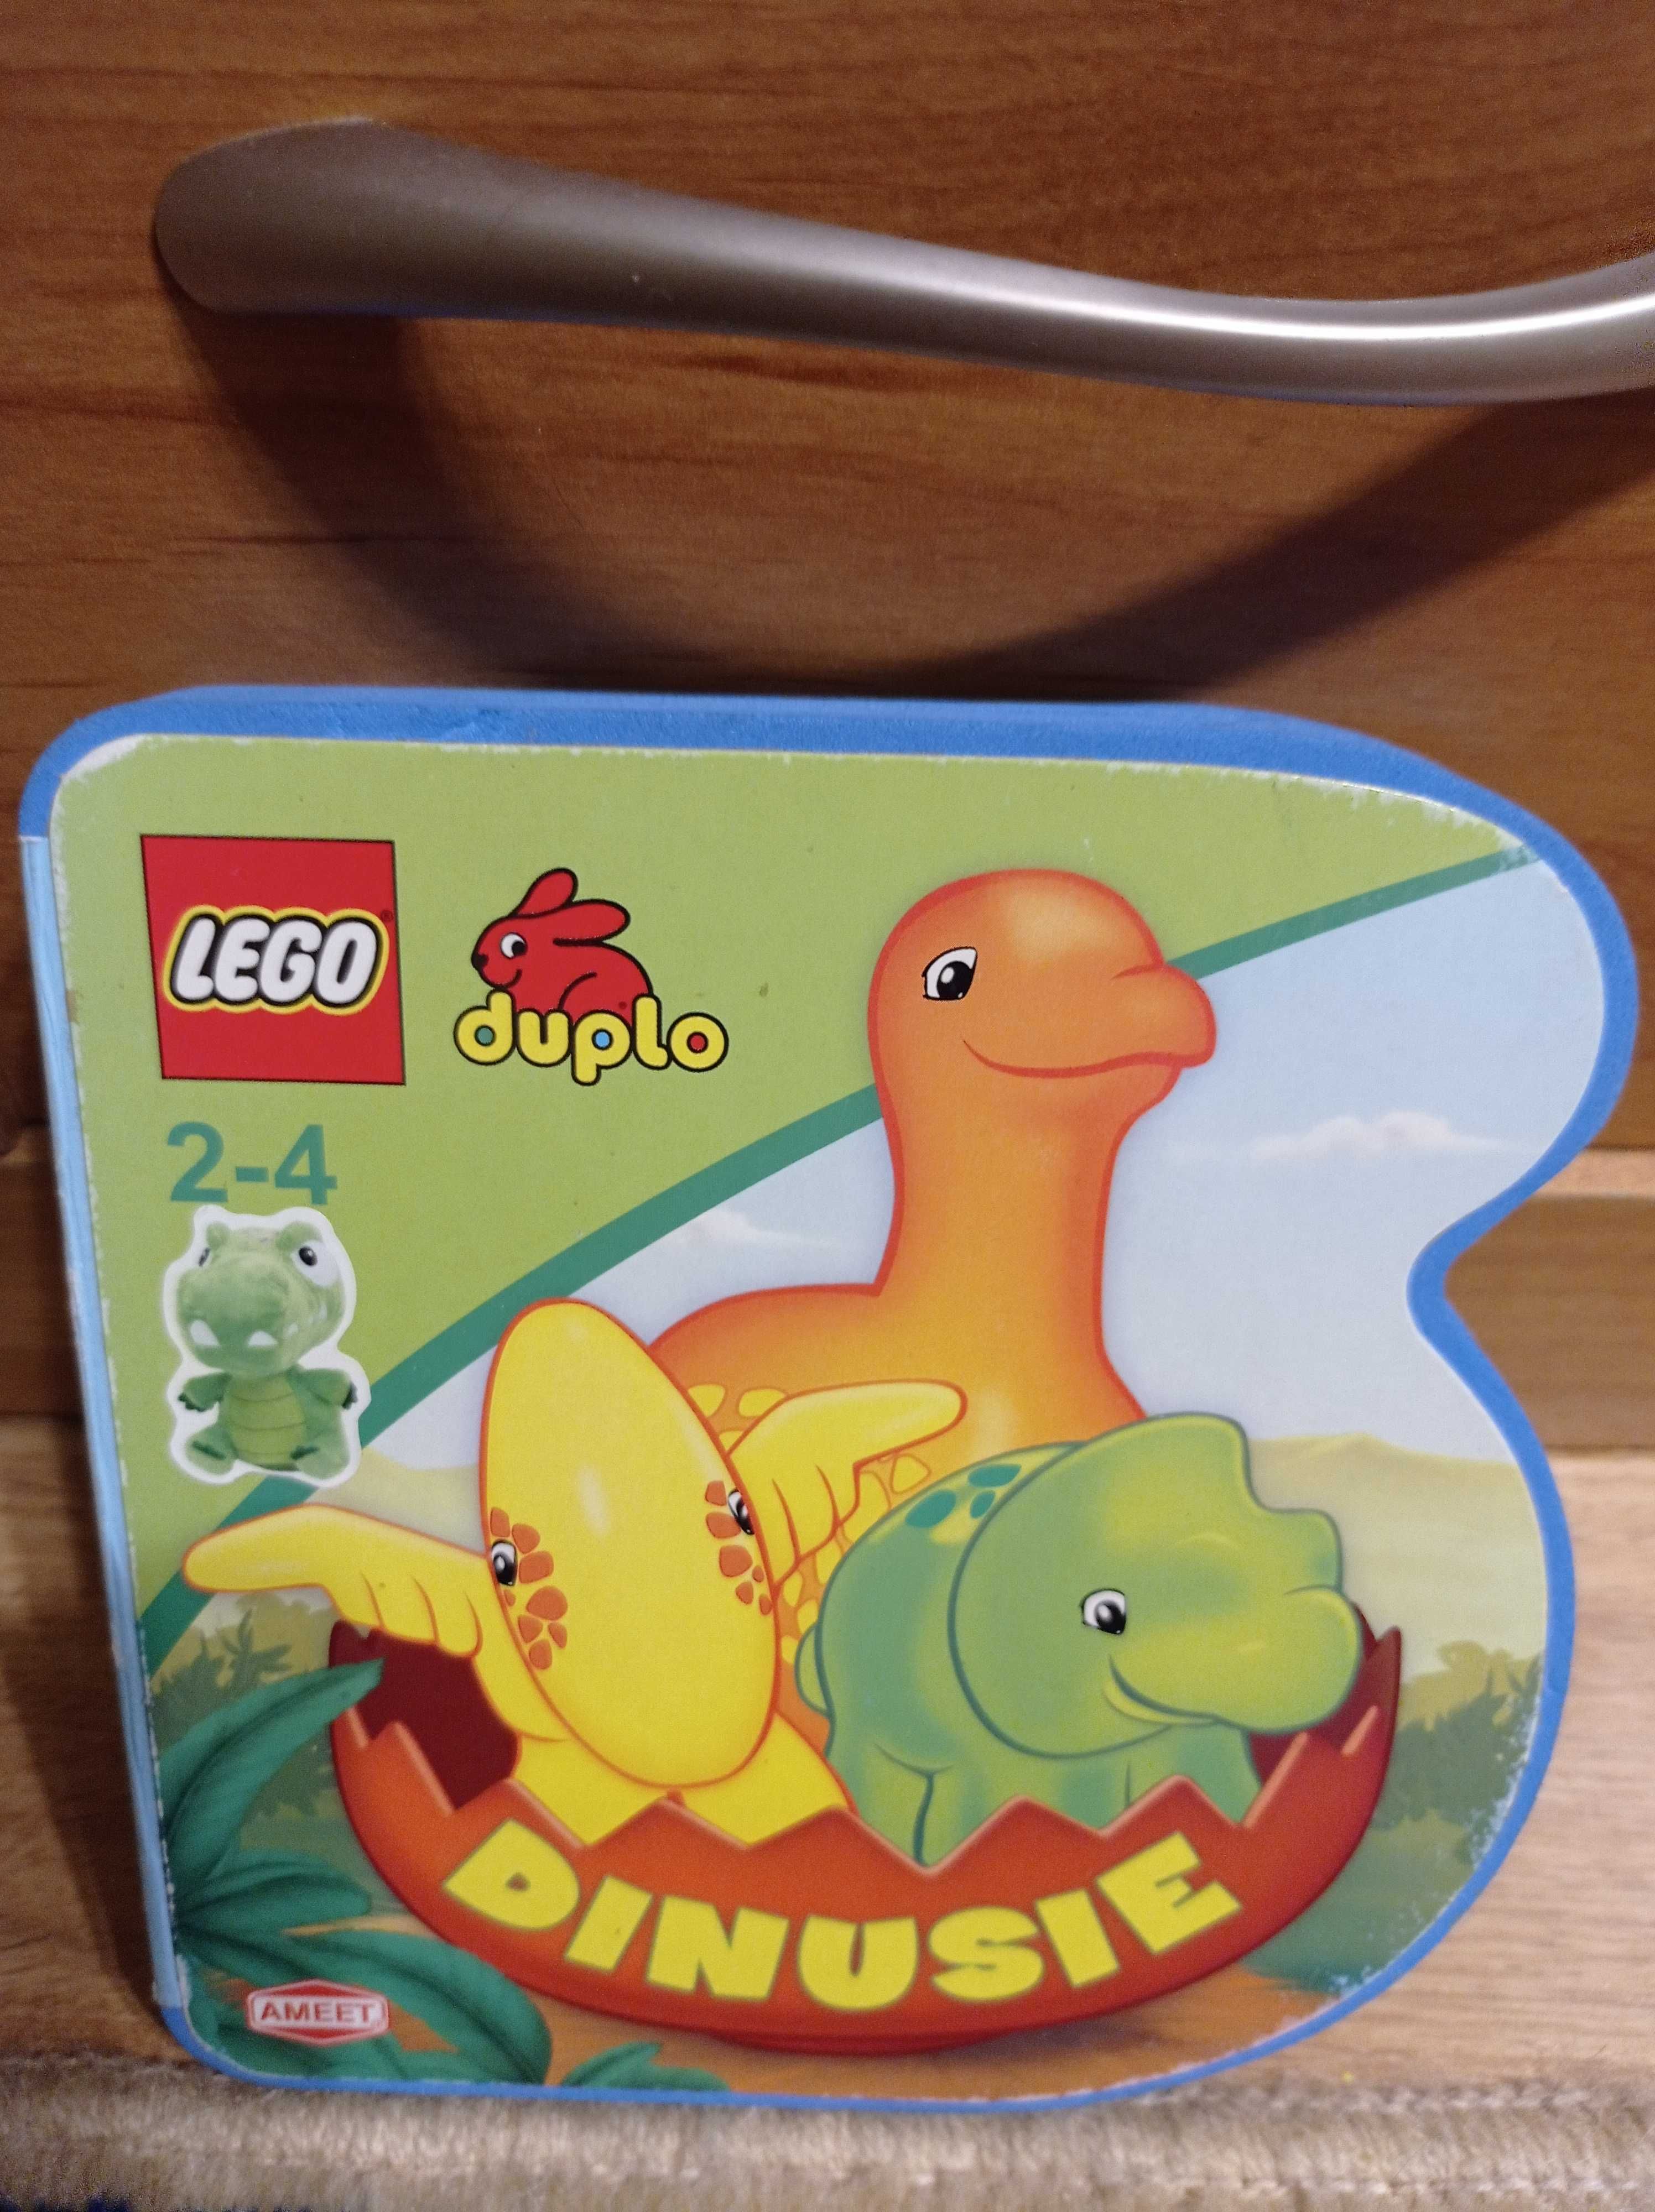 Dinusie - LEGO Duplo